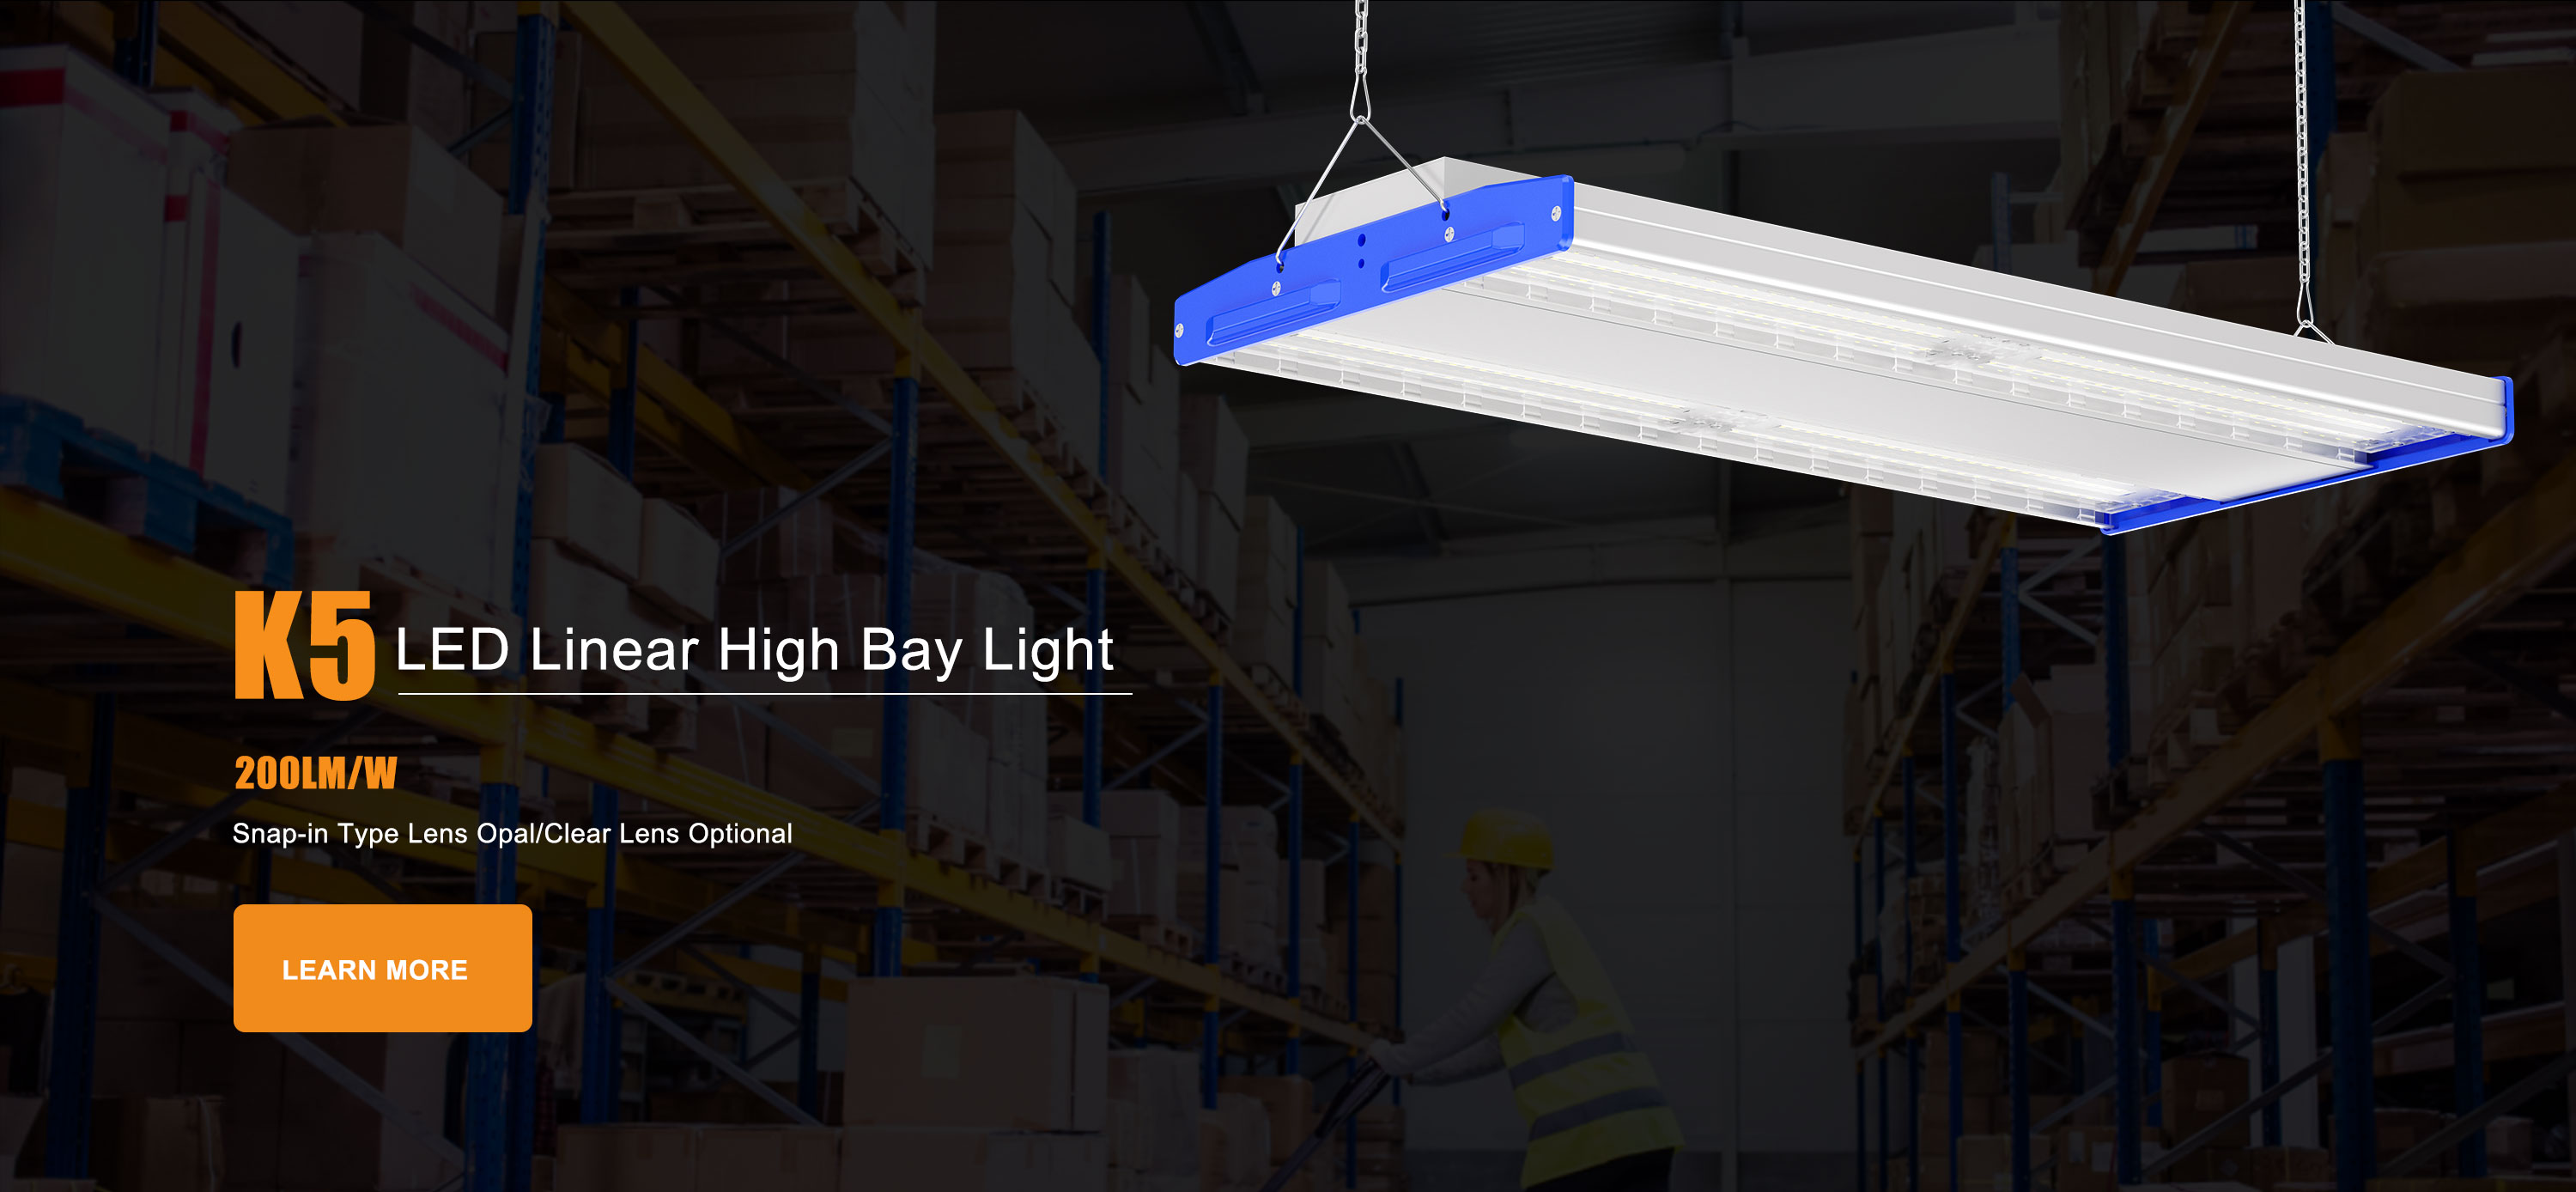 LED Linear High Bay Light